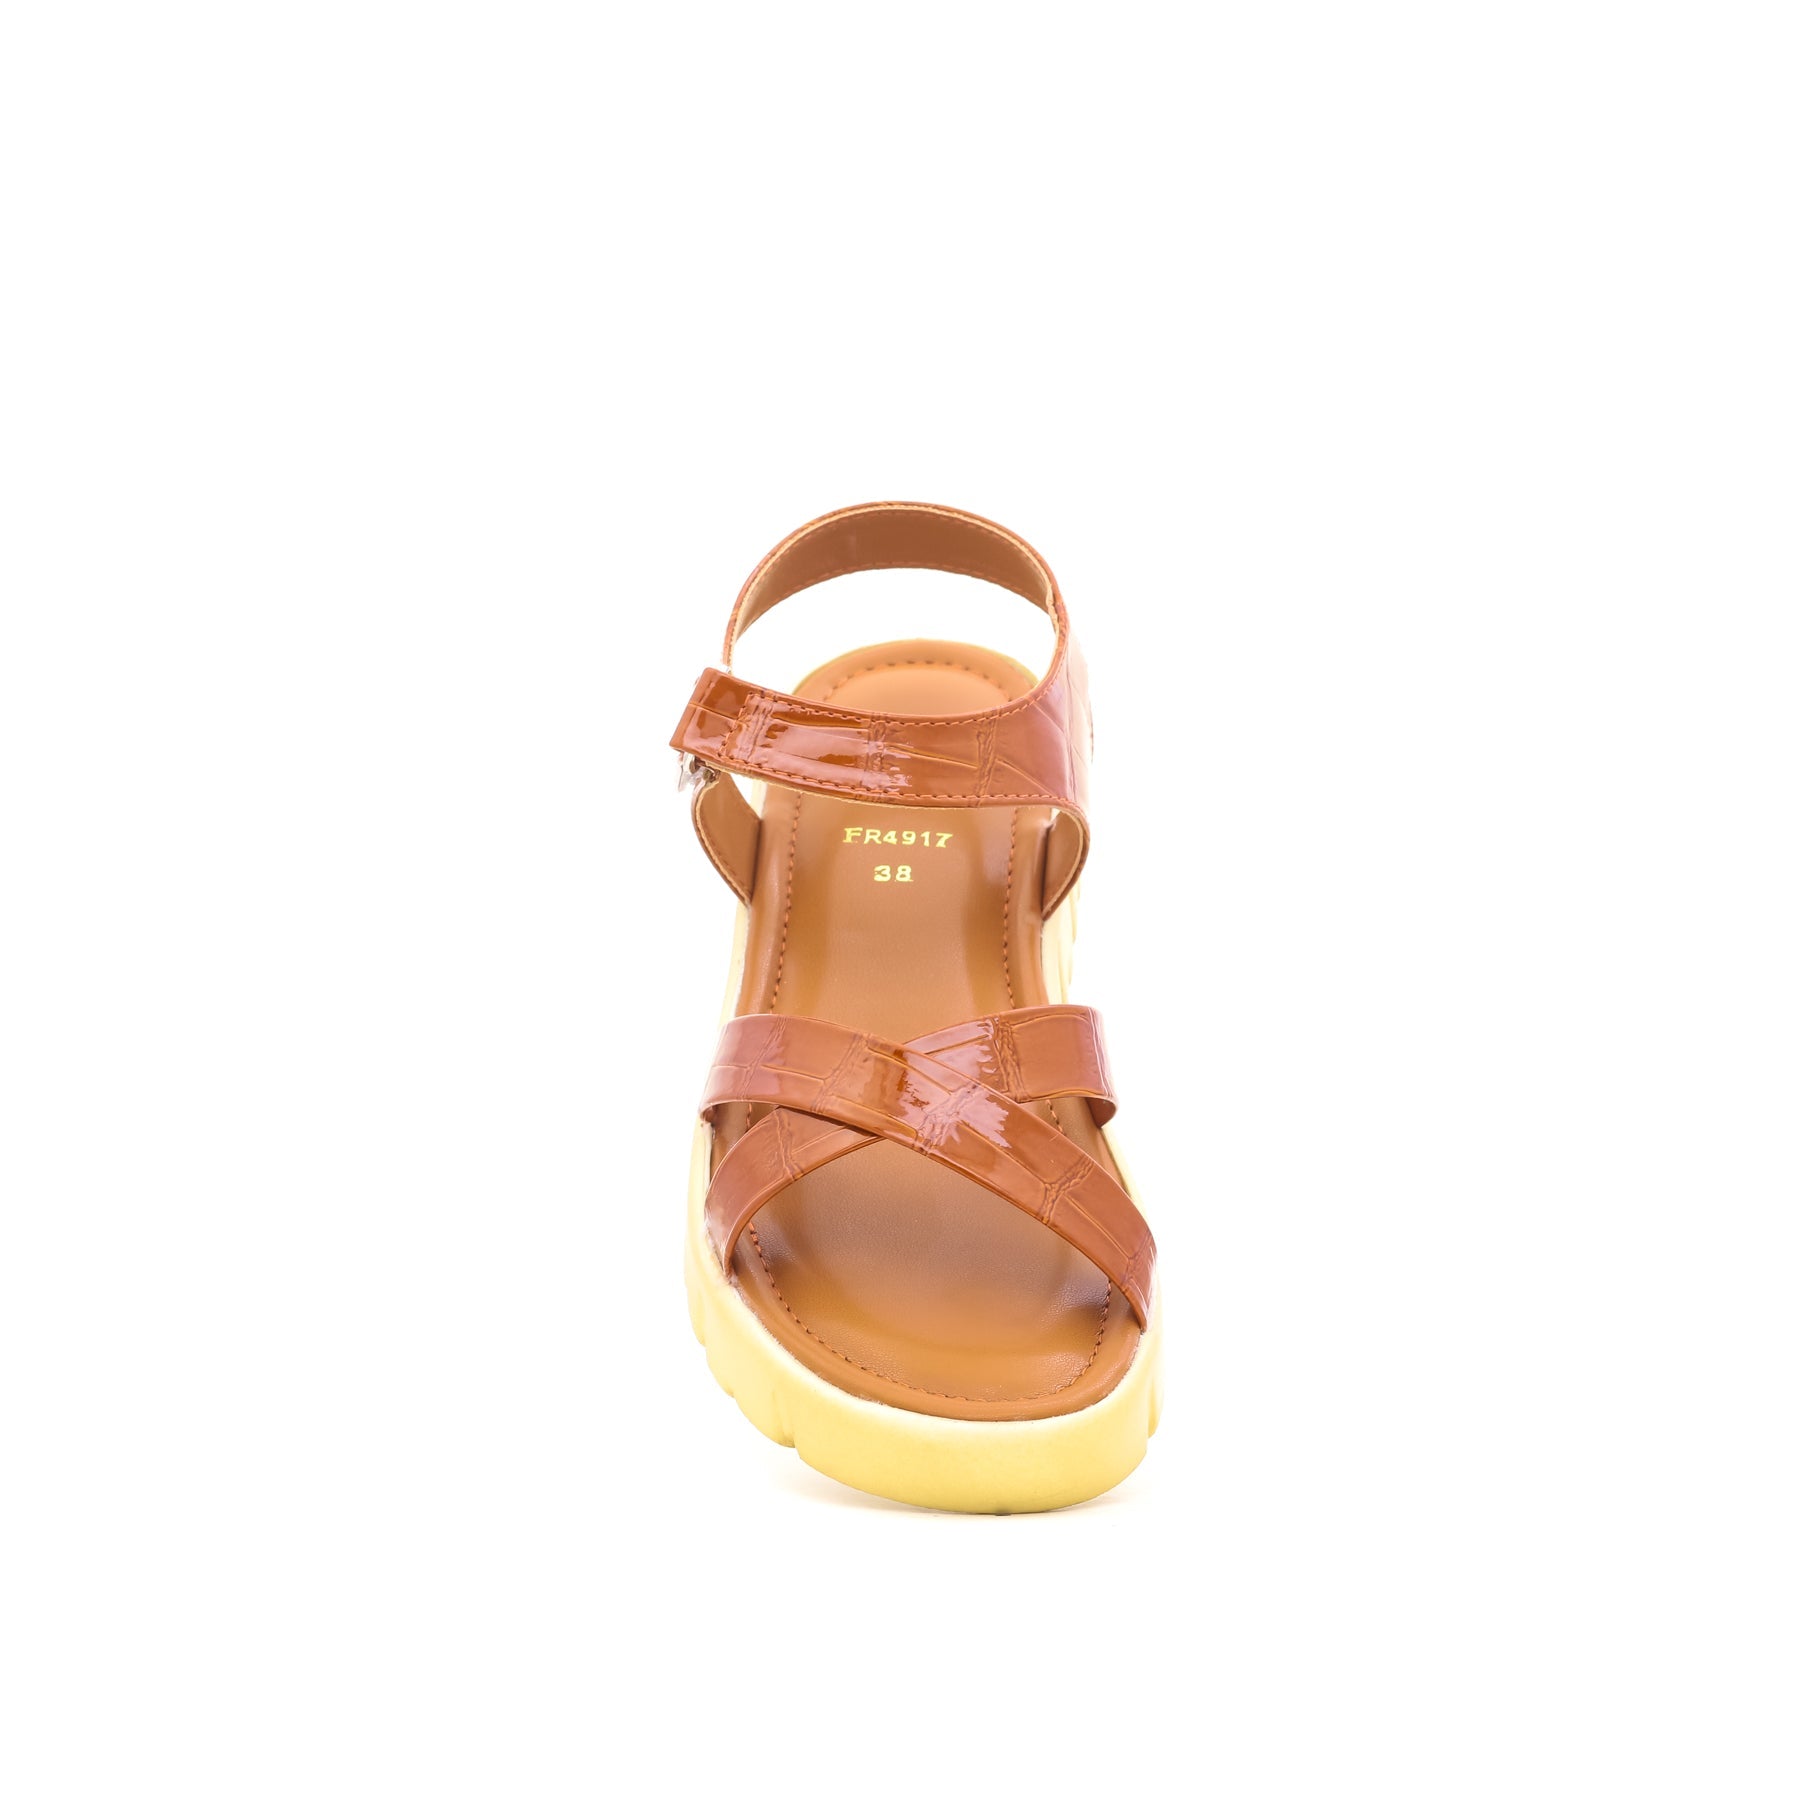 Mustard Formal Sandal FR4917